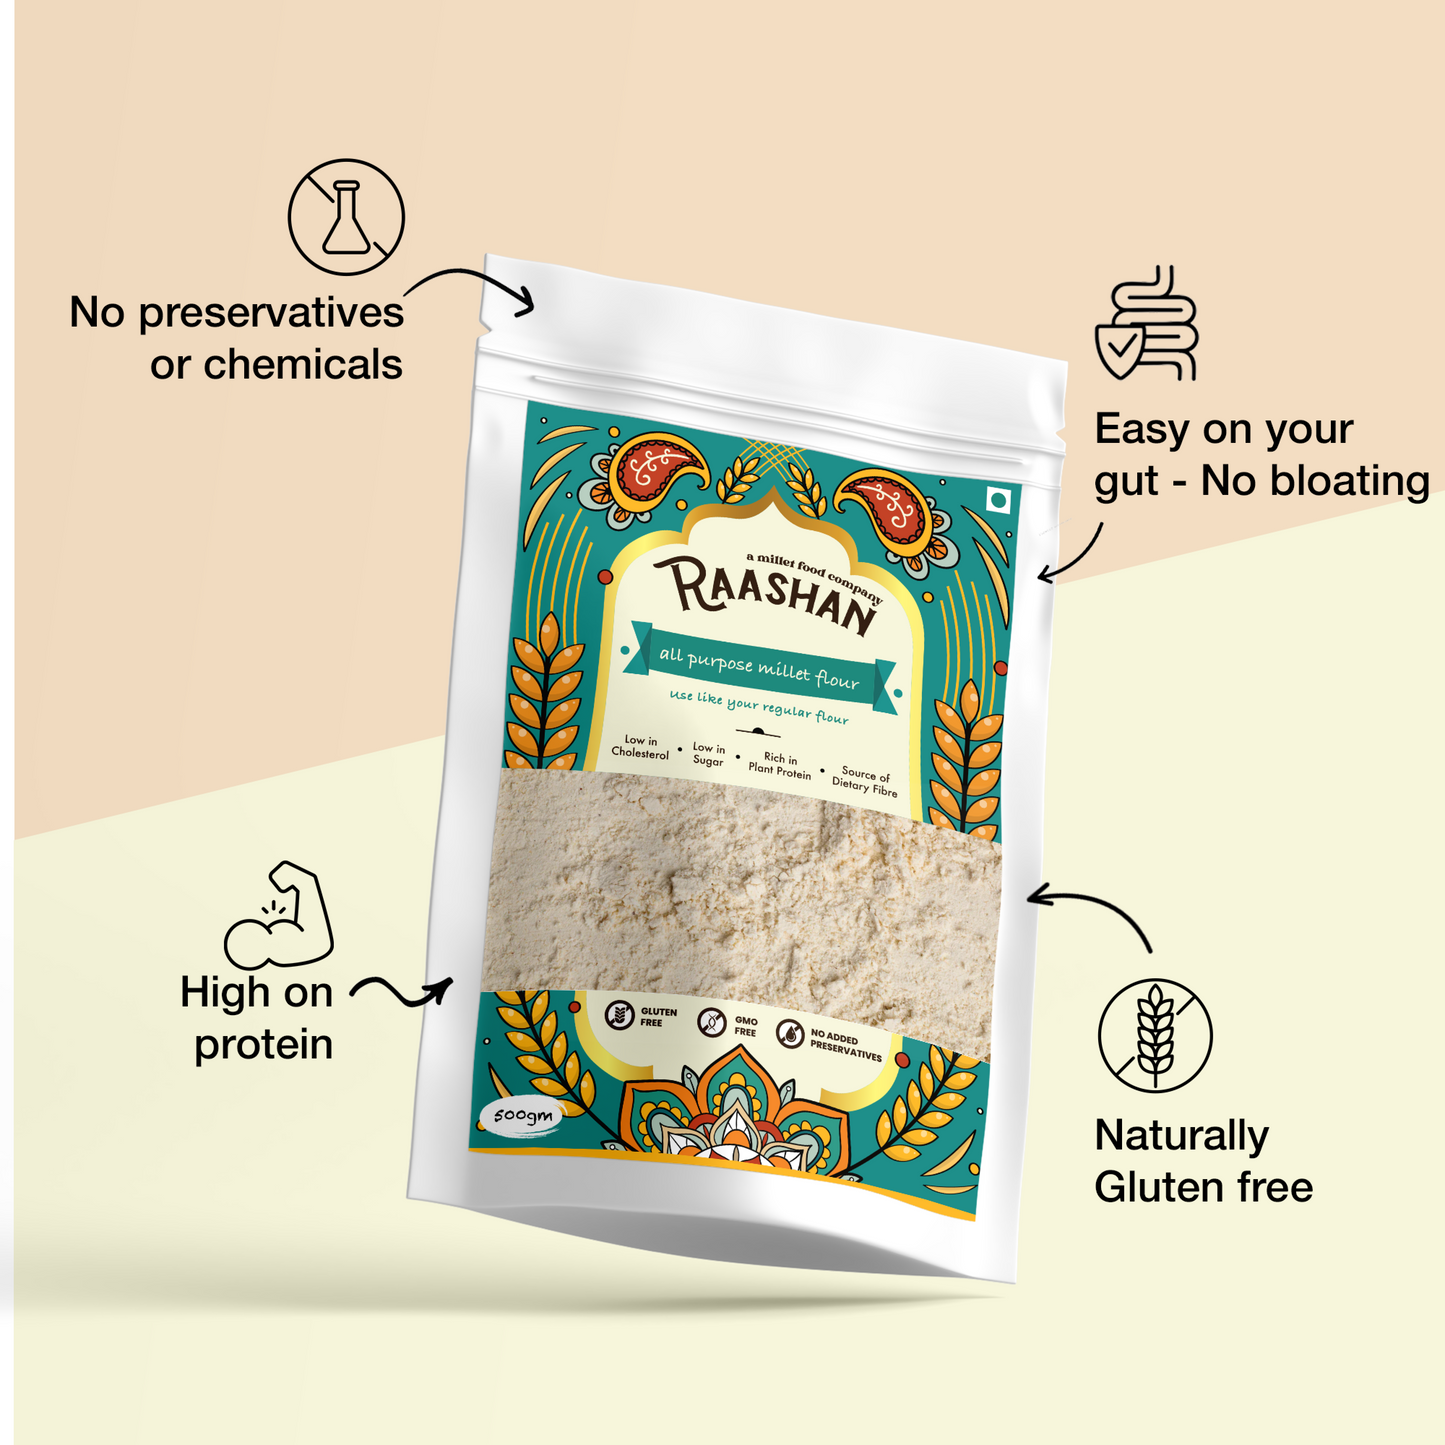 100% Gluten free - All purpose millet flour